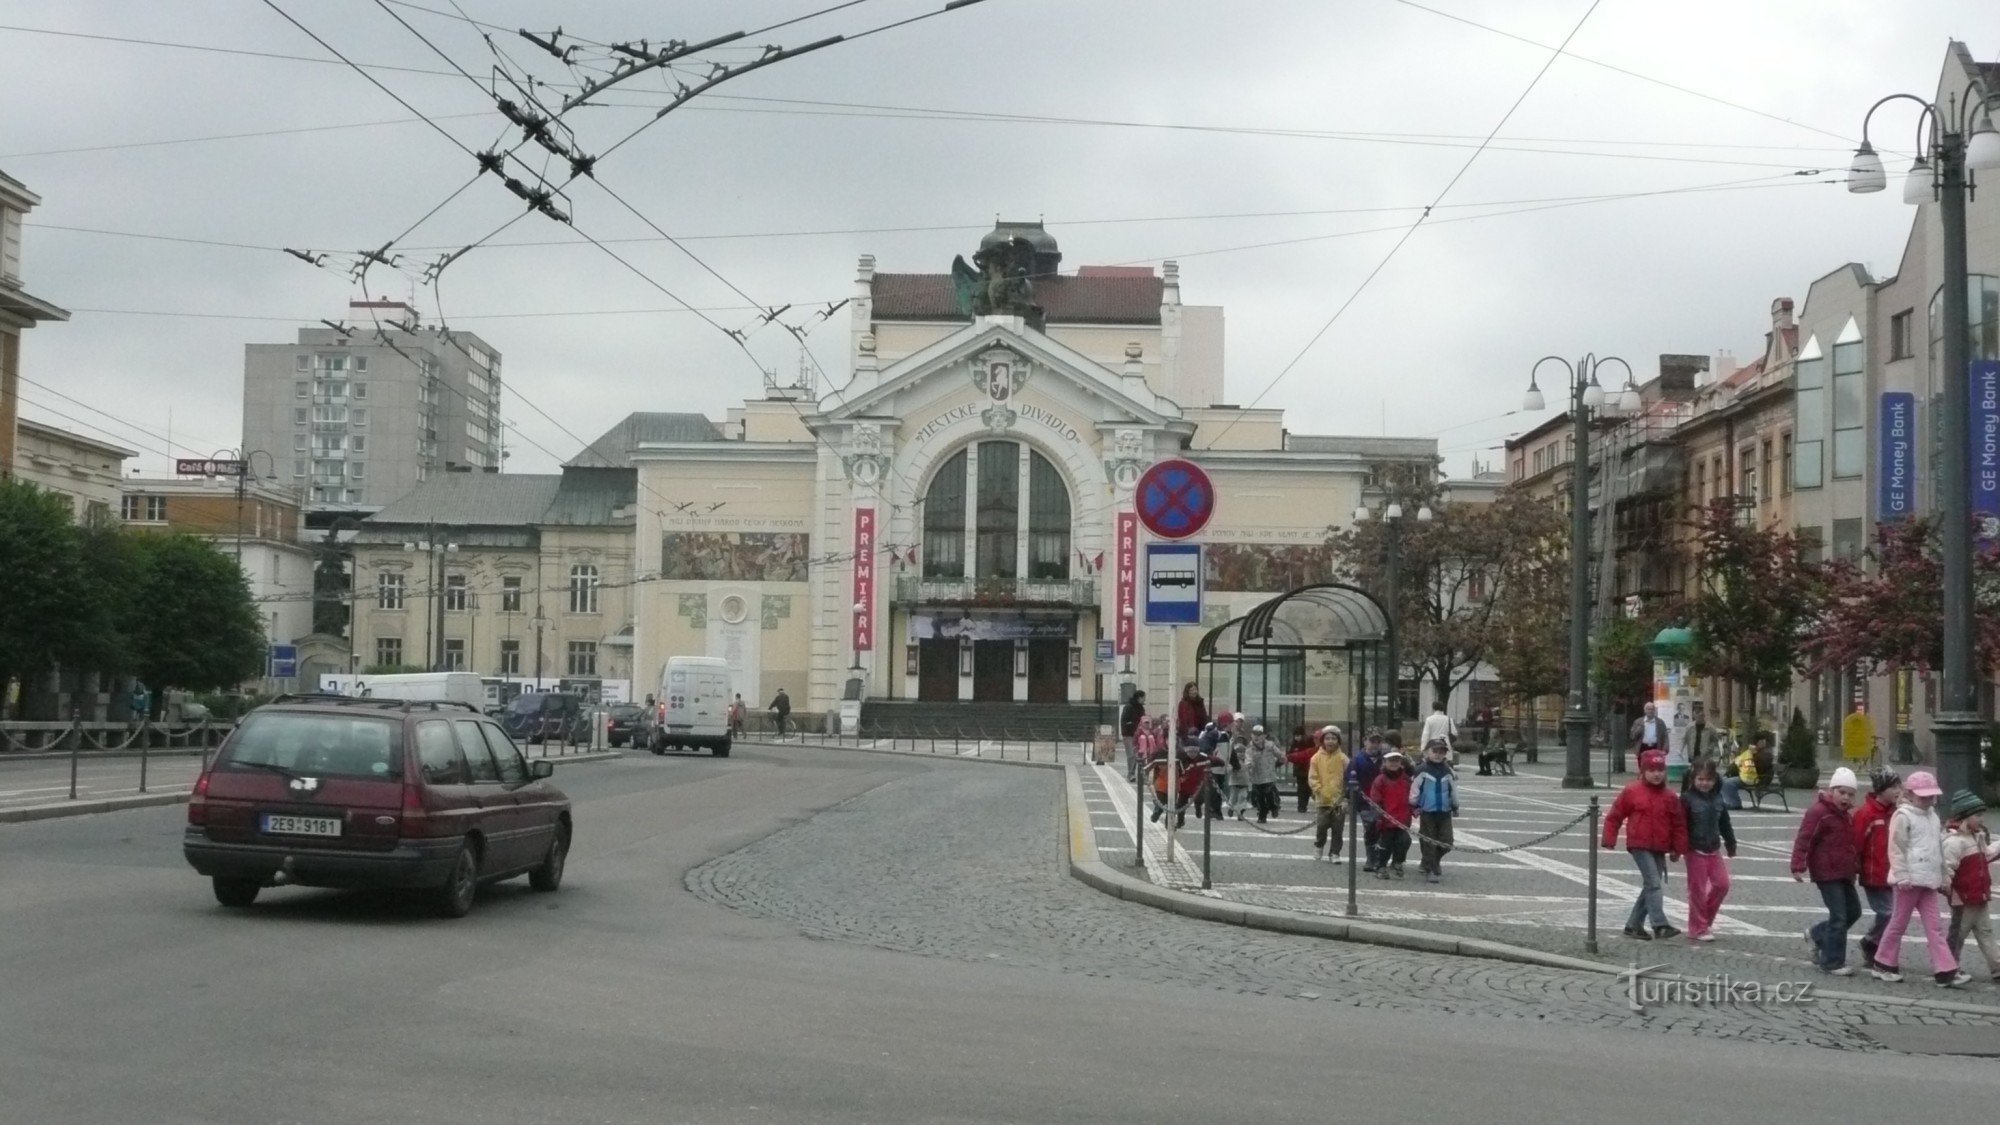 Stadttheater